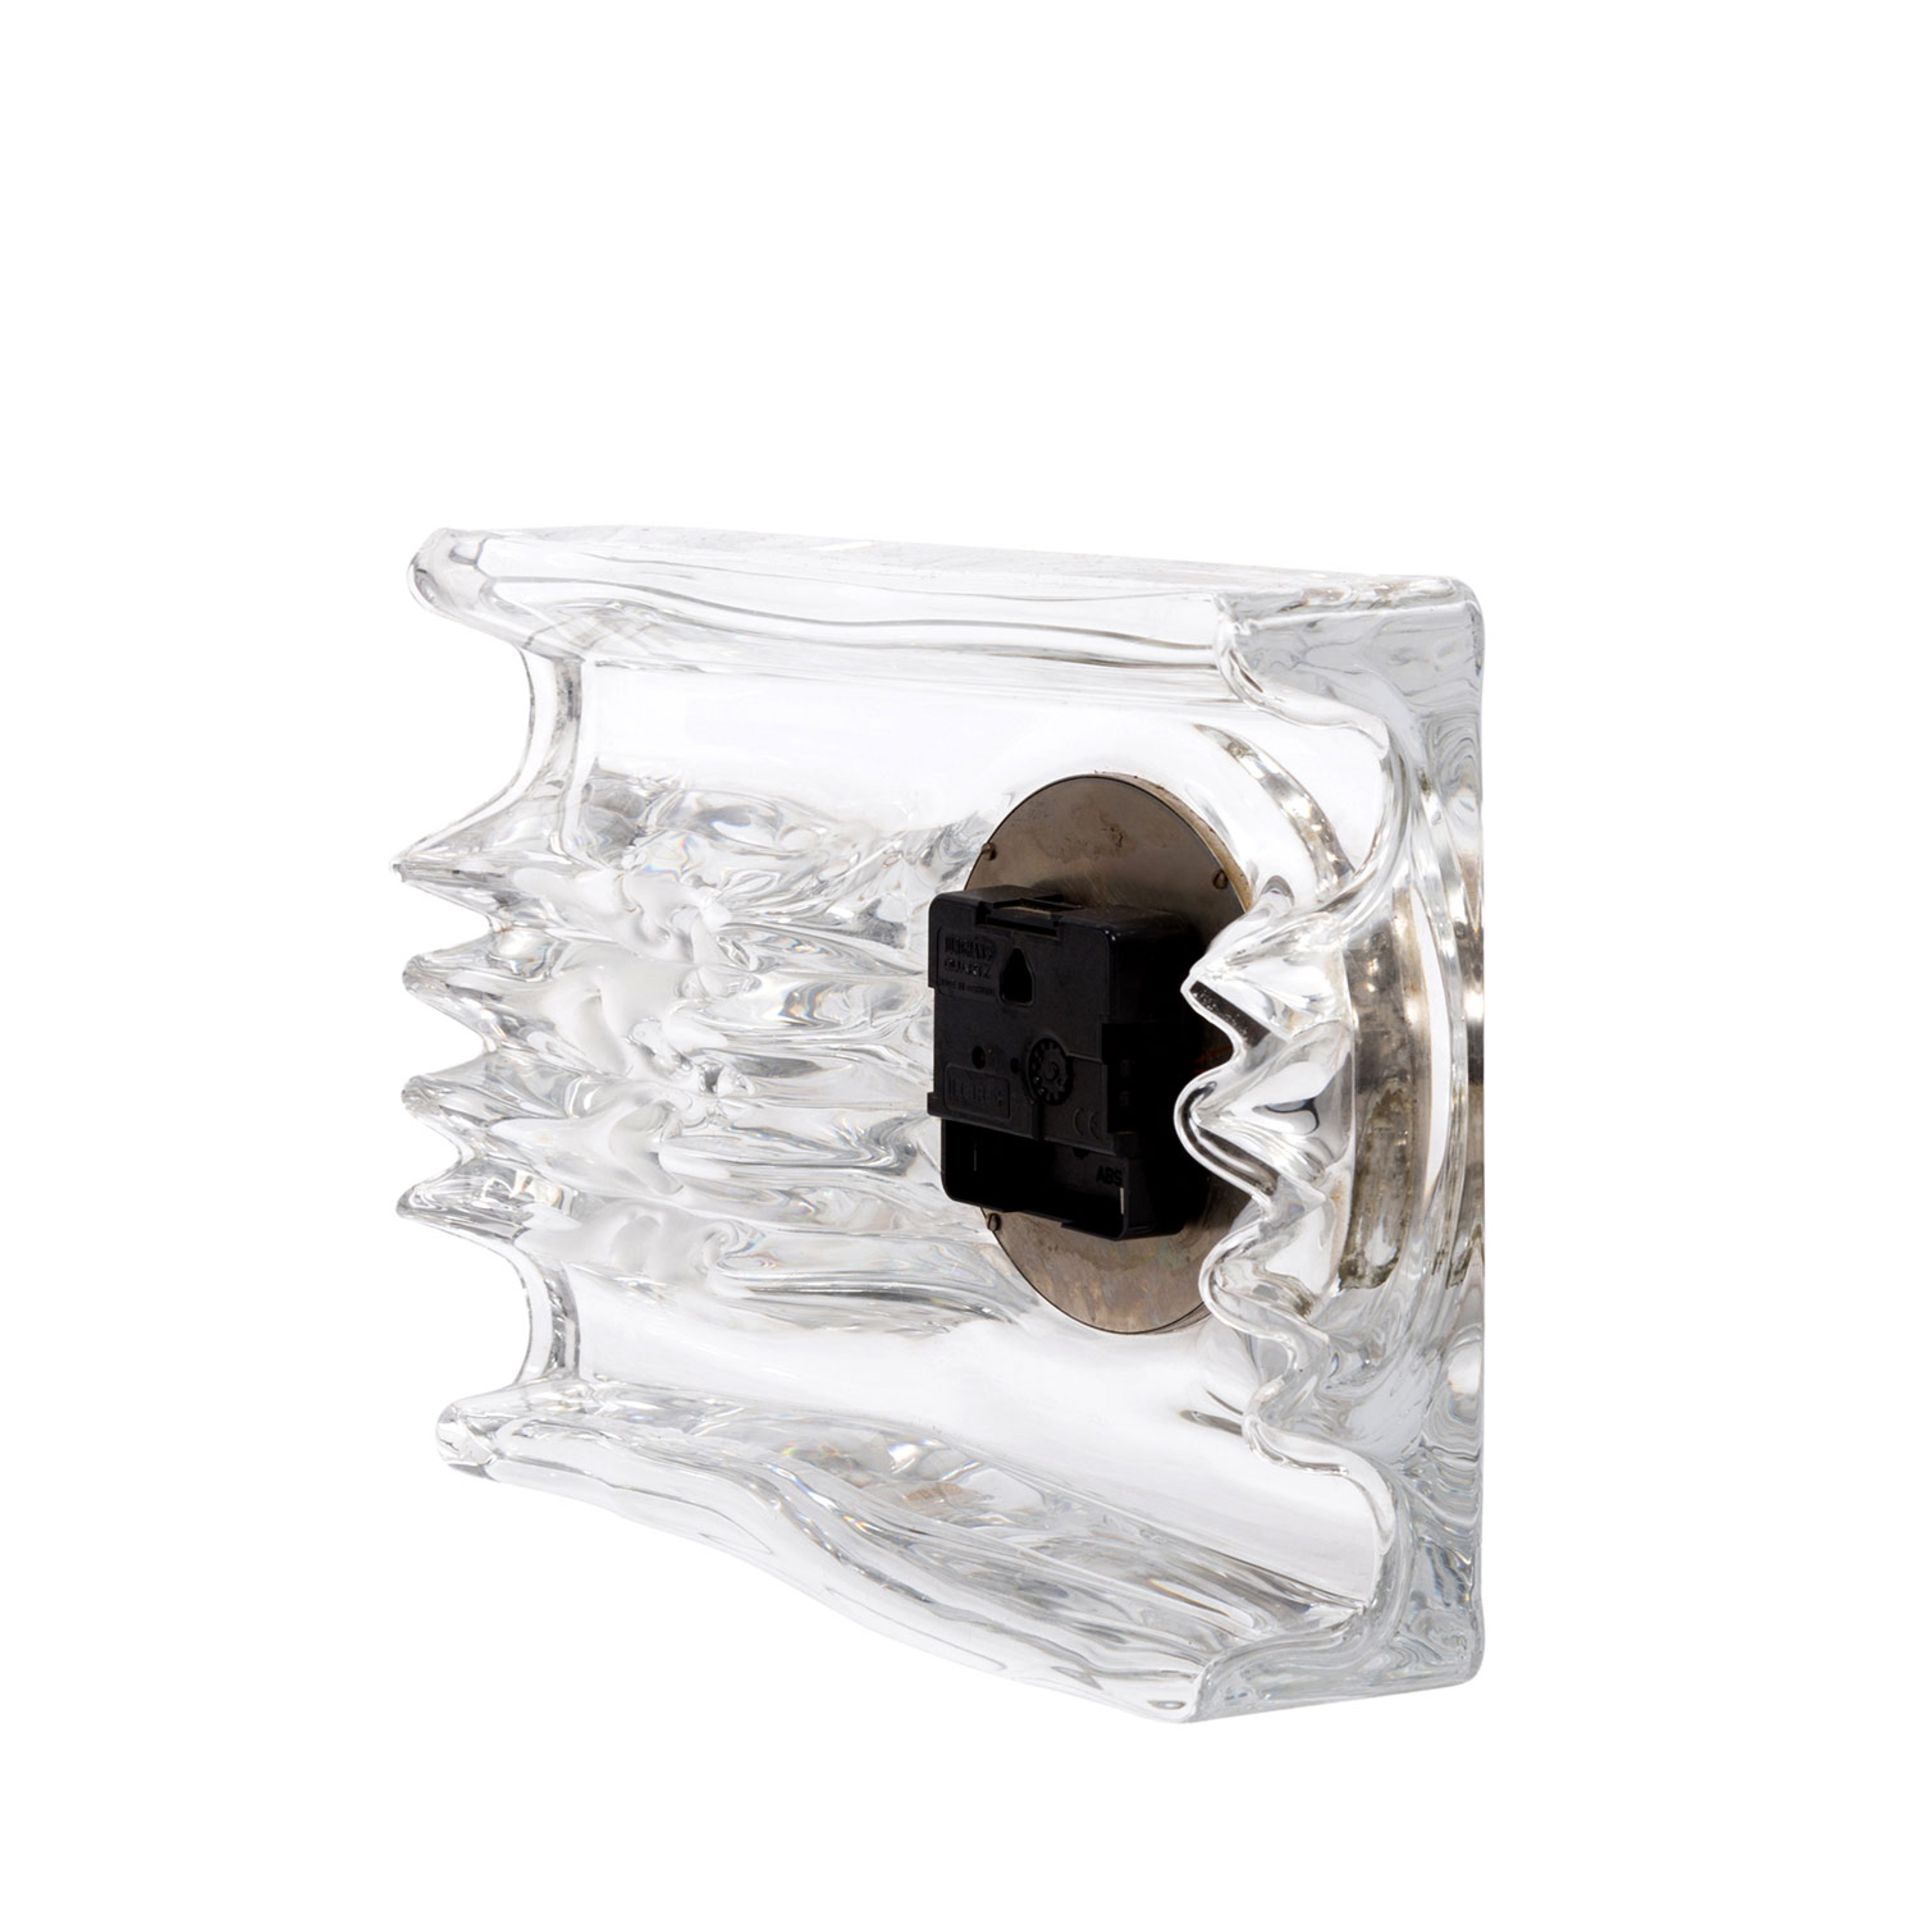 DAUM Quartz-Uhr, 20.Jh.quadratischer Glaskorpus mit eingesetzter Uhr, batteriebetrieben, - Image 3 of 4